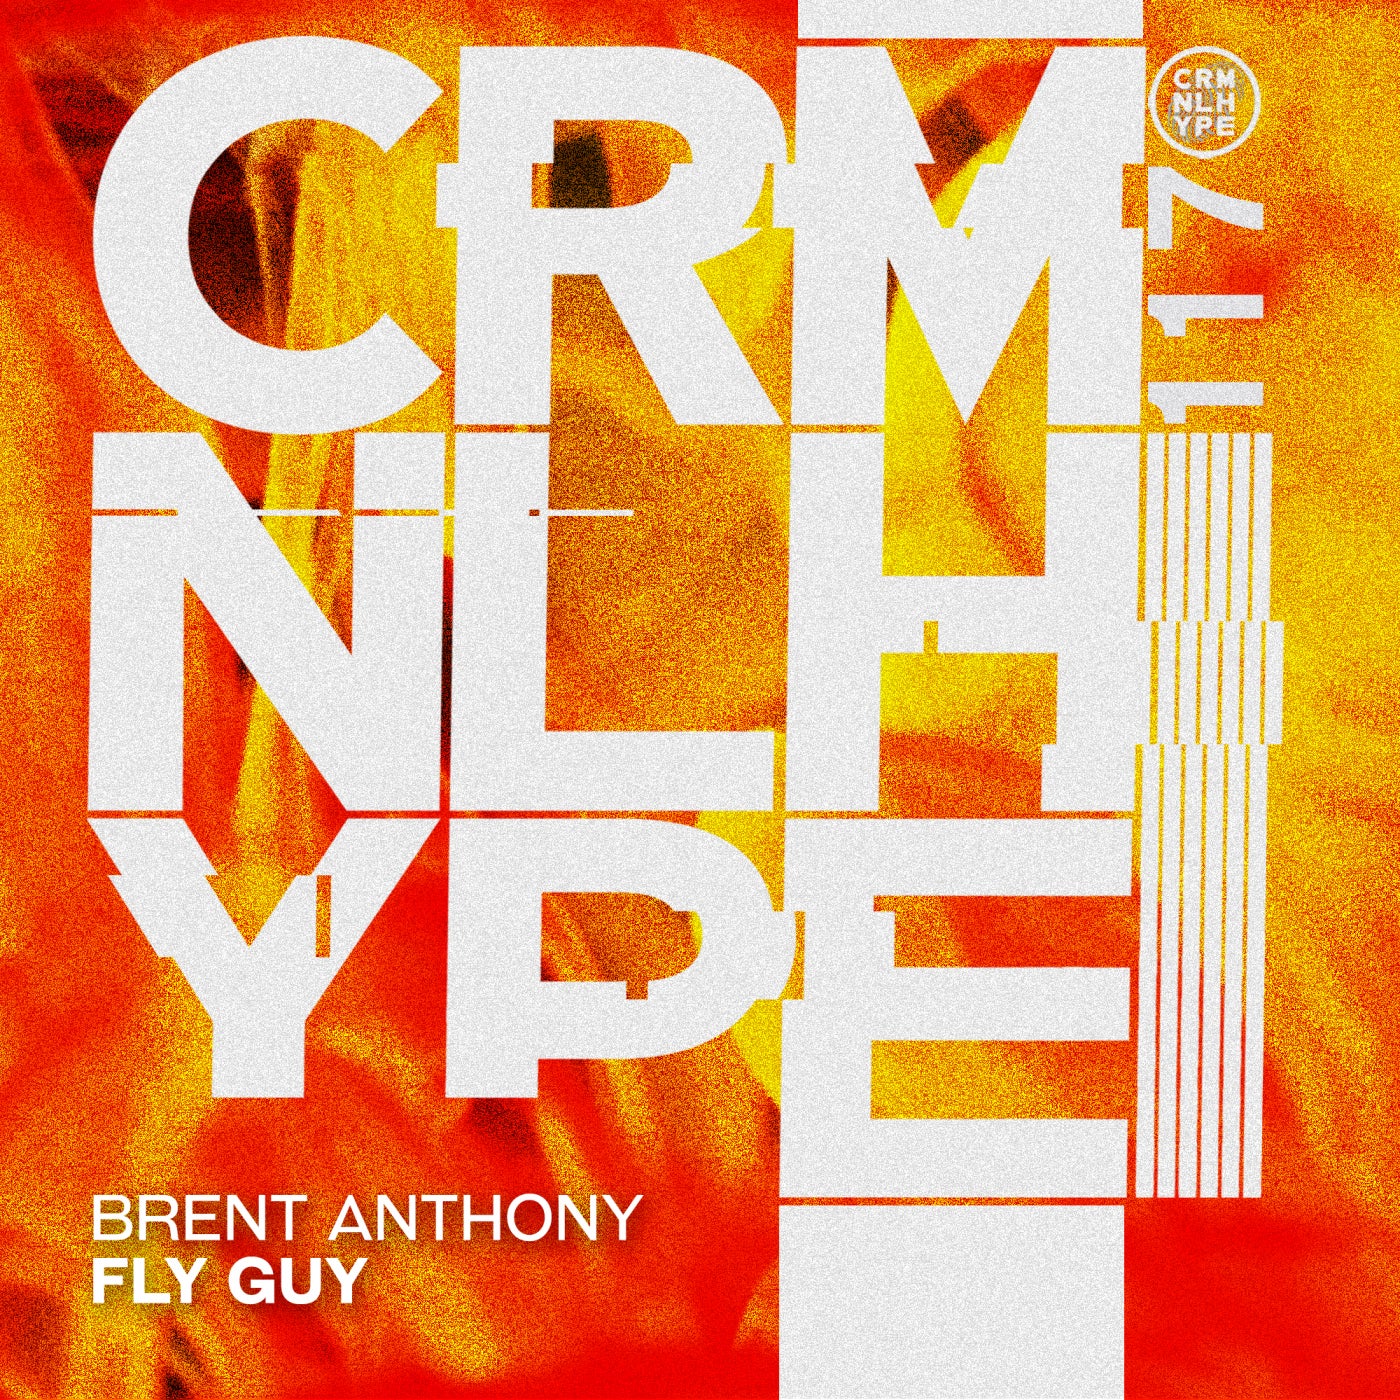 Brent Anthony, Jennifer Jamieson, Callum Knight – Fly Guy [CHR117]